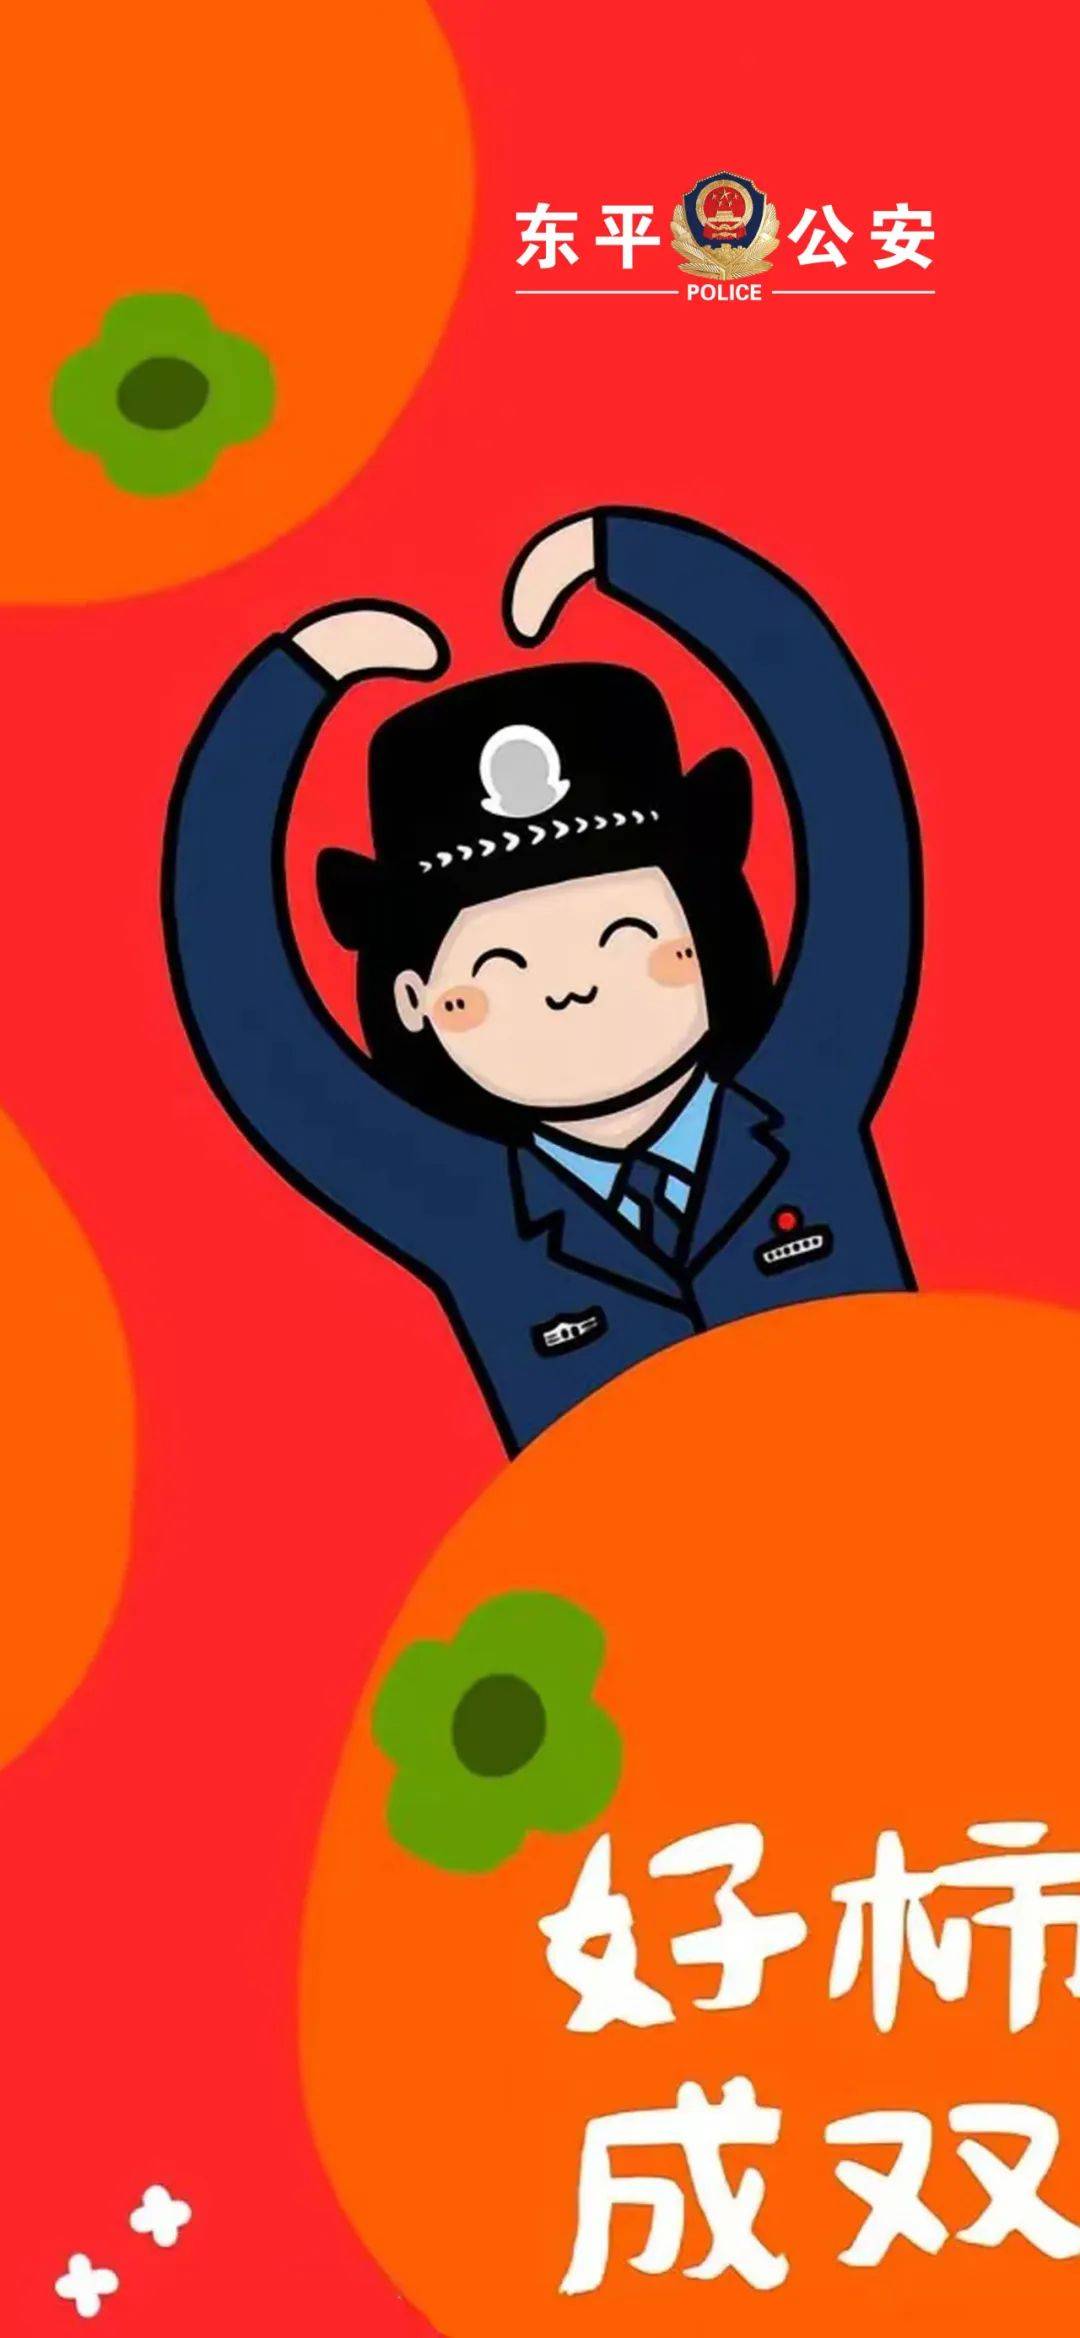 卡通警察壁纸图片